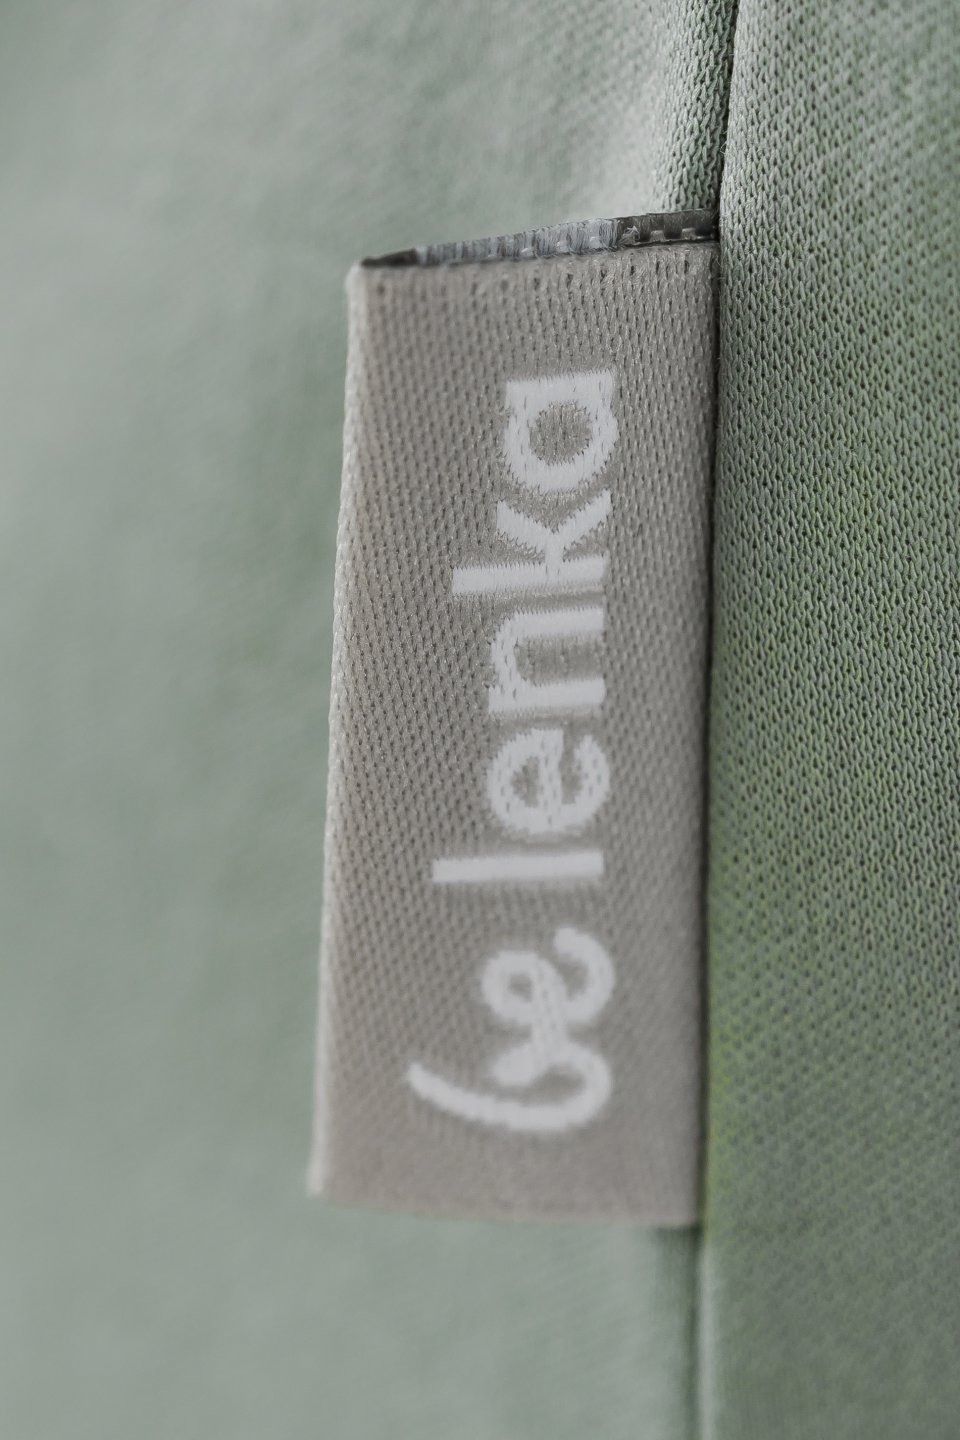 Maglietta da donna con girocollo Be Lenka Essentials - Pistachio Green